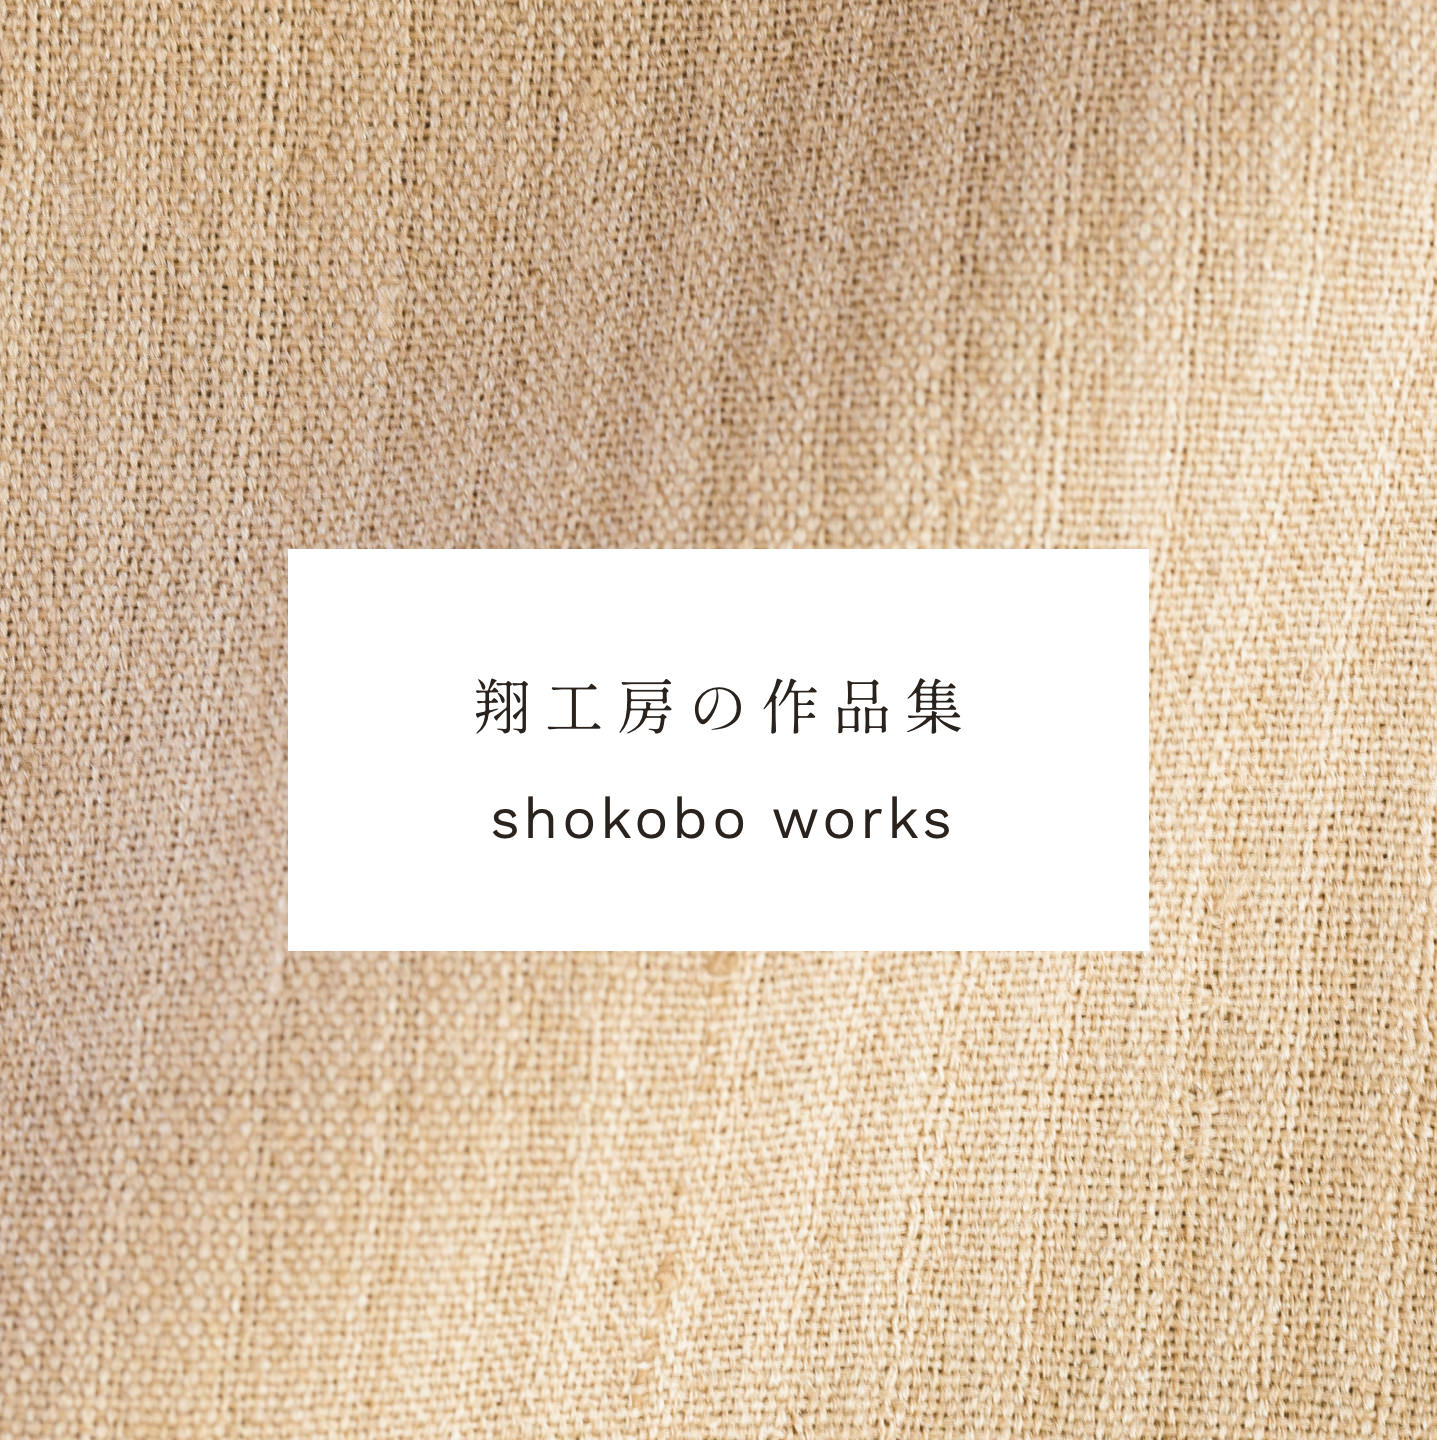 翔工房の作品集 shokobo works